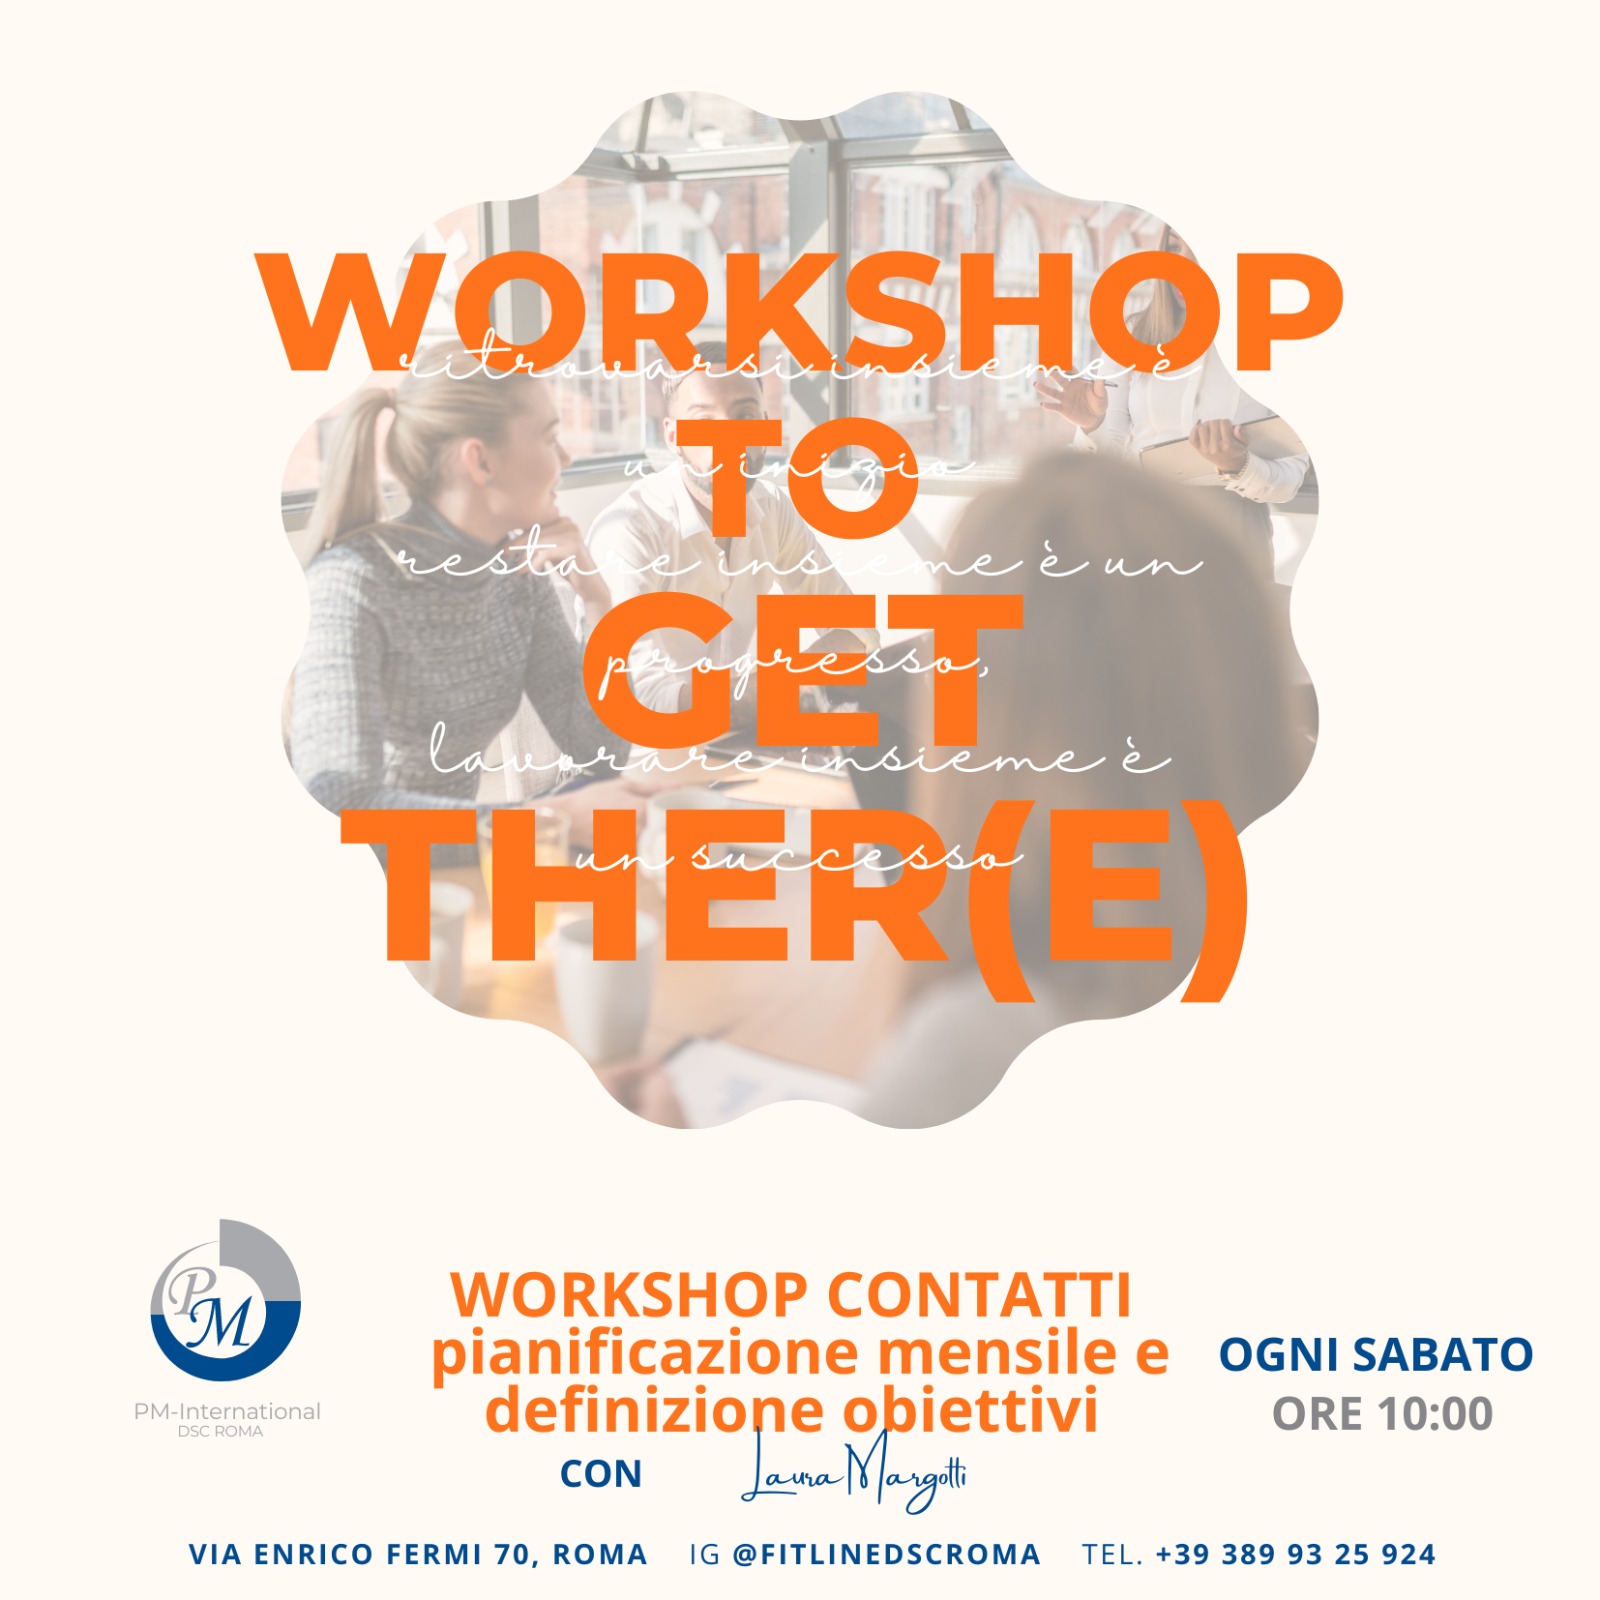 Ogni sabato dalle ore 10:00 presso la sede del Dsc Roma Workshop